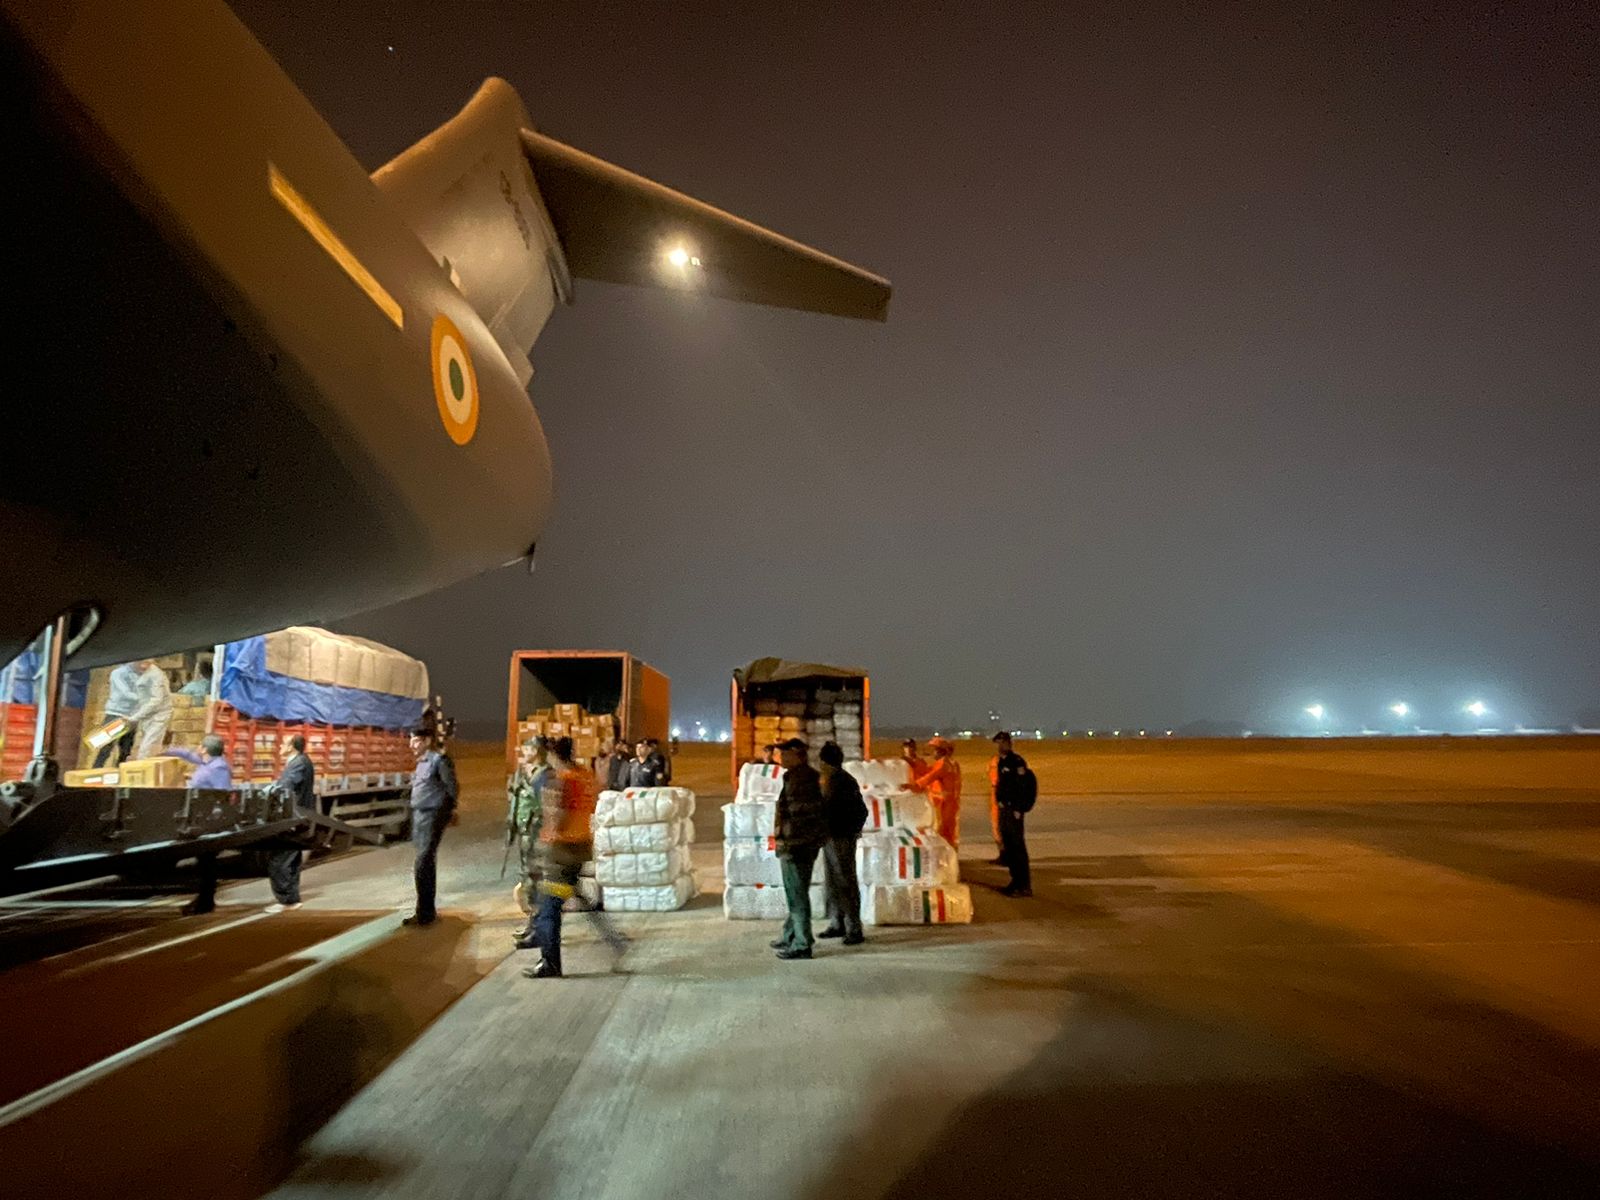 وصول رحلة “عملية دوست” السابعة للهند محملة بـ 35 طنًا من الإمدادات الطبية لسوريا وتركيا